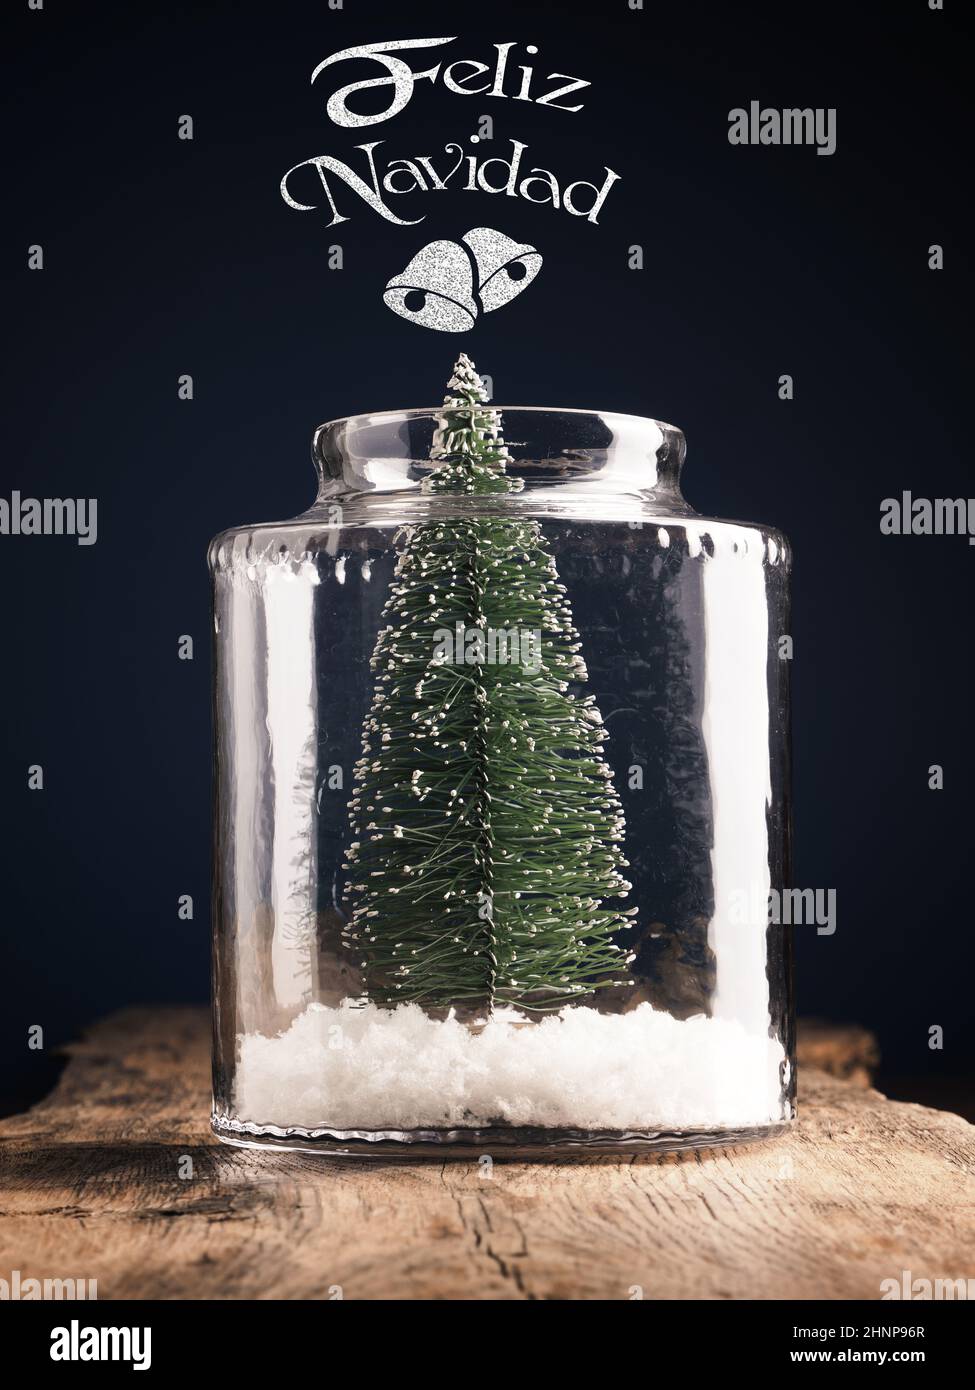 Ein Weihnachtsbaum im Glas mit Schnee, spanische Schriftzüge Frohe Weihnachten, Weihnachtskarte, Urlaubskonzept Stockfoto